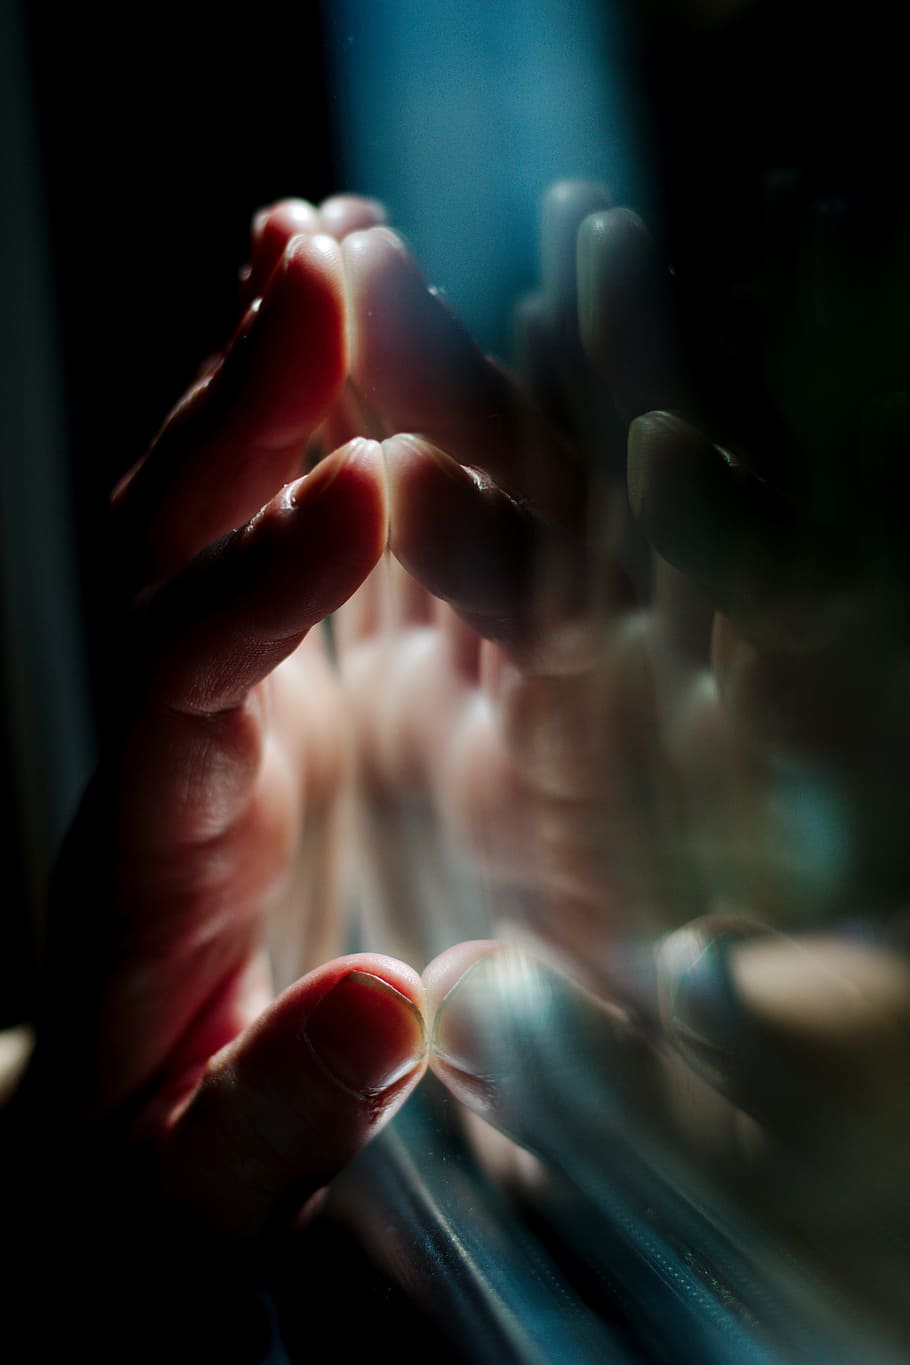 mão, palma, borrão, noite, luz, janela, vidro, reflexão, mão humana, parte do corpo humano